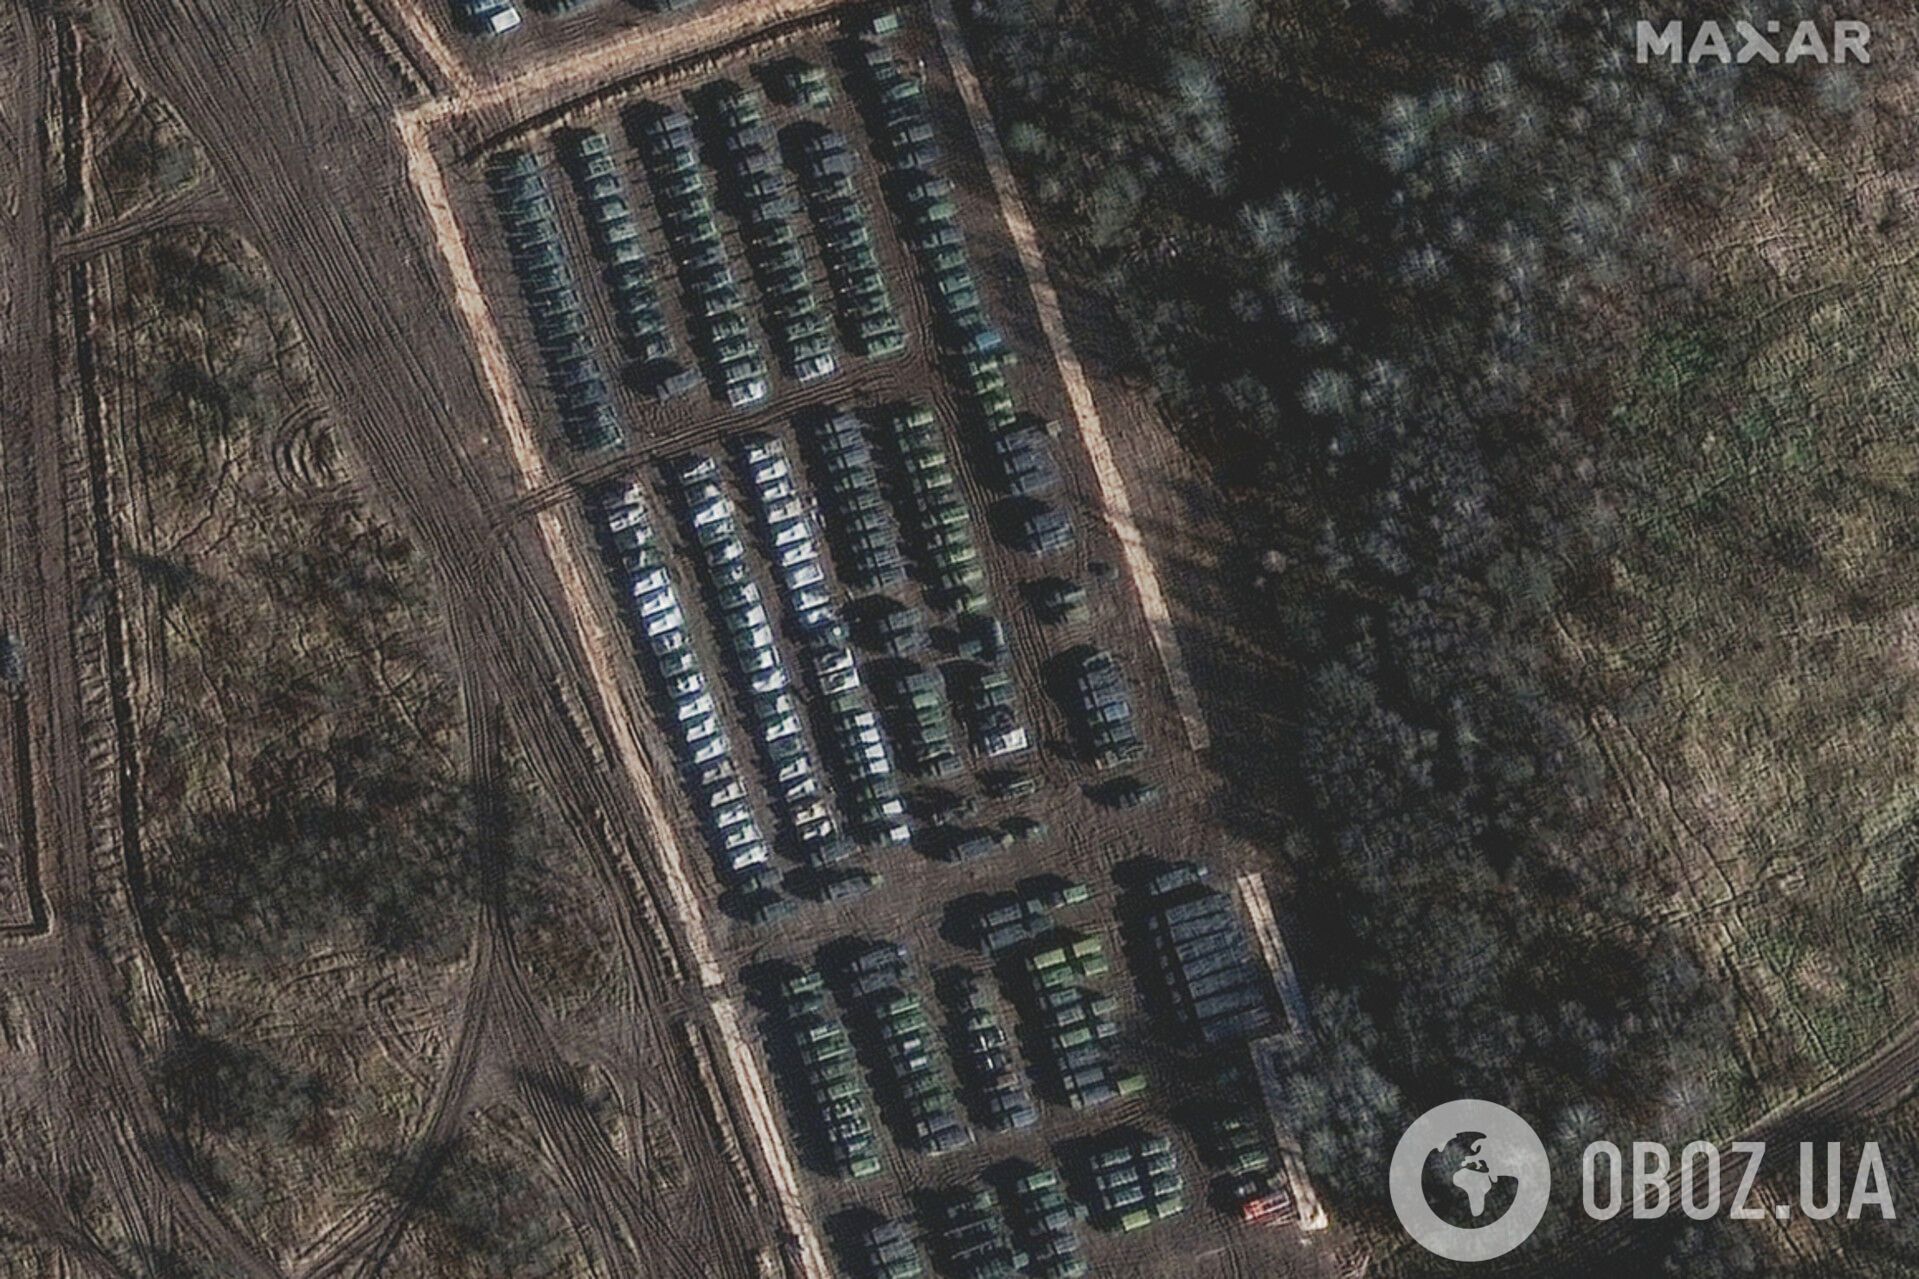 Самохідна артилерійська установка та інше обладнання в Єльні, Росія